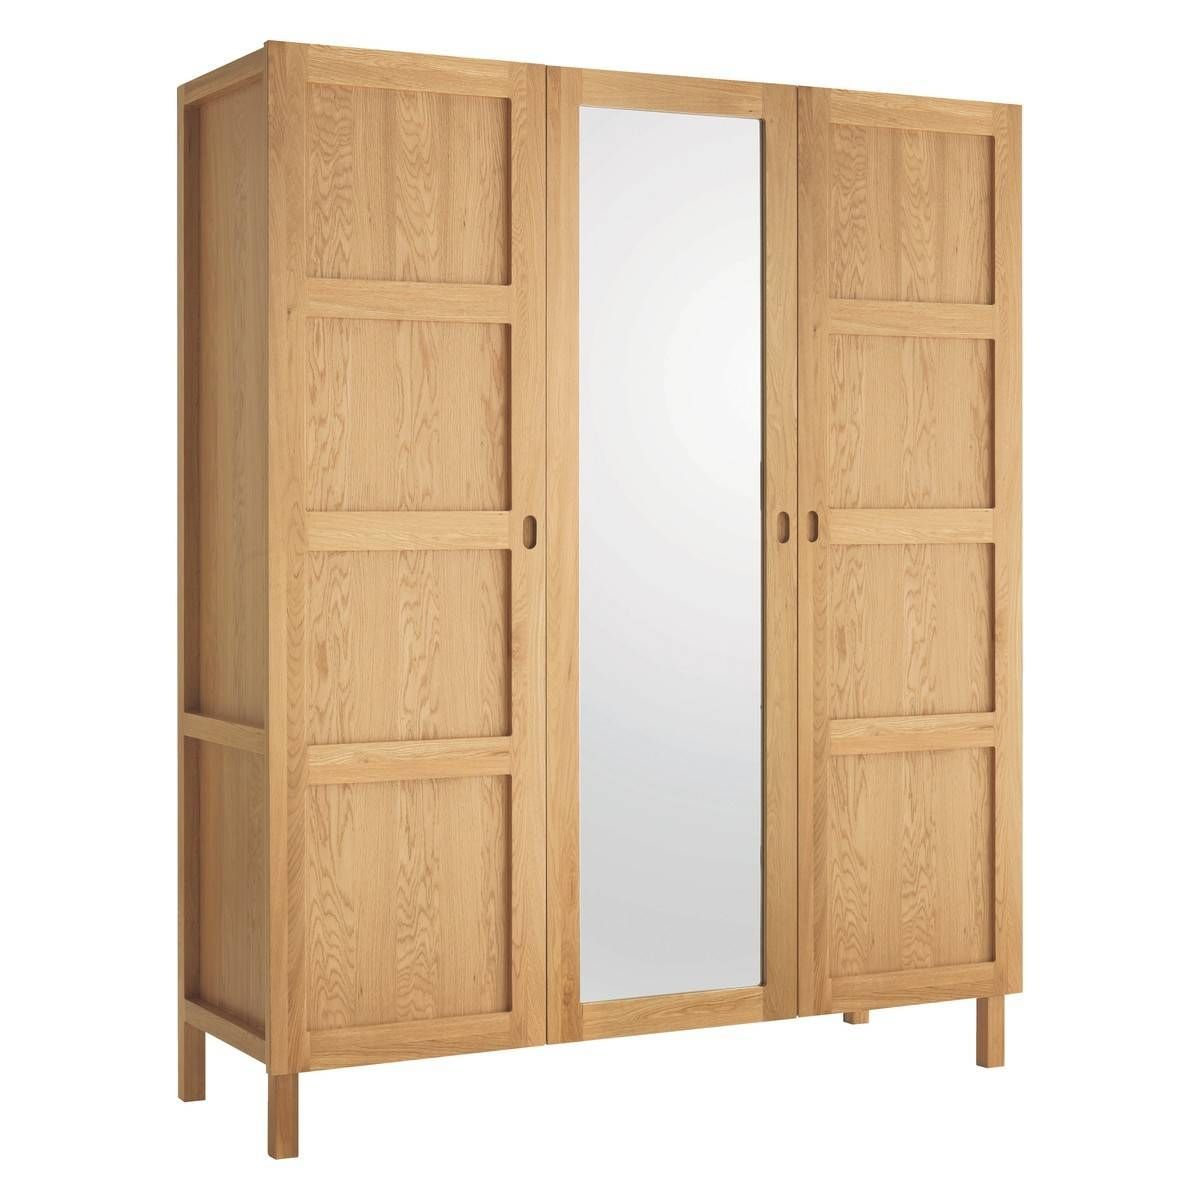 Radius Oak 3 Door Wardrobe | Buy Now At Habitat Uk For Oak 3 Door Wardrobes (View 4 of 15)